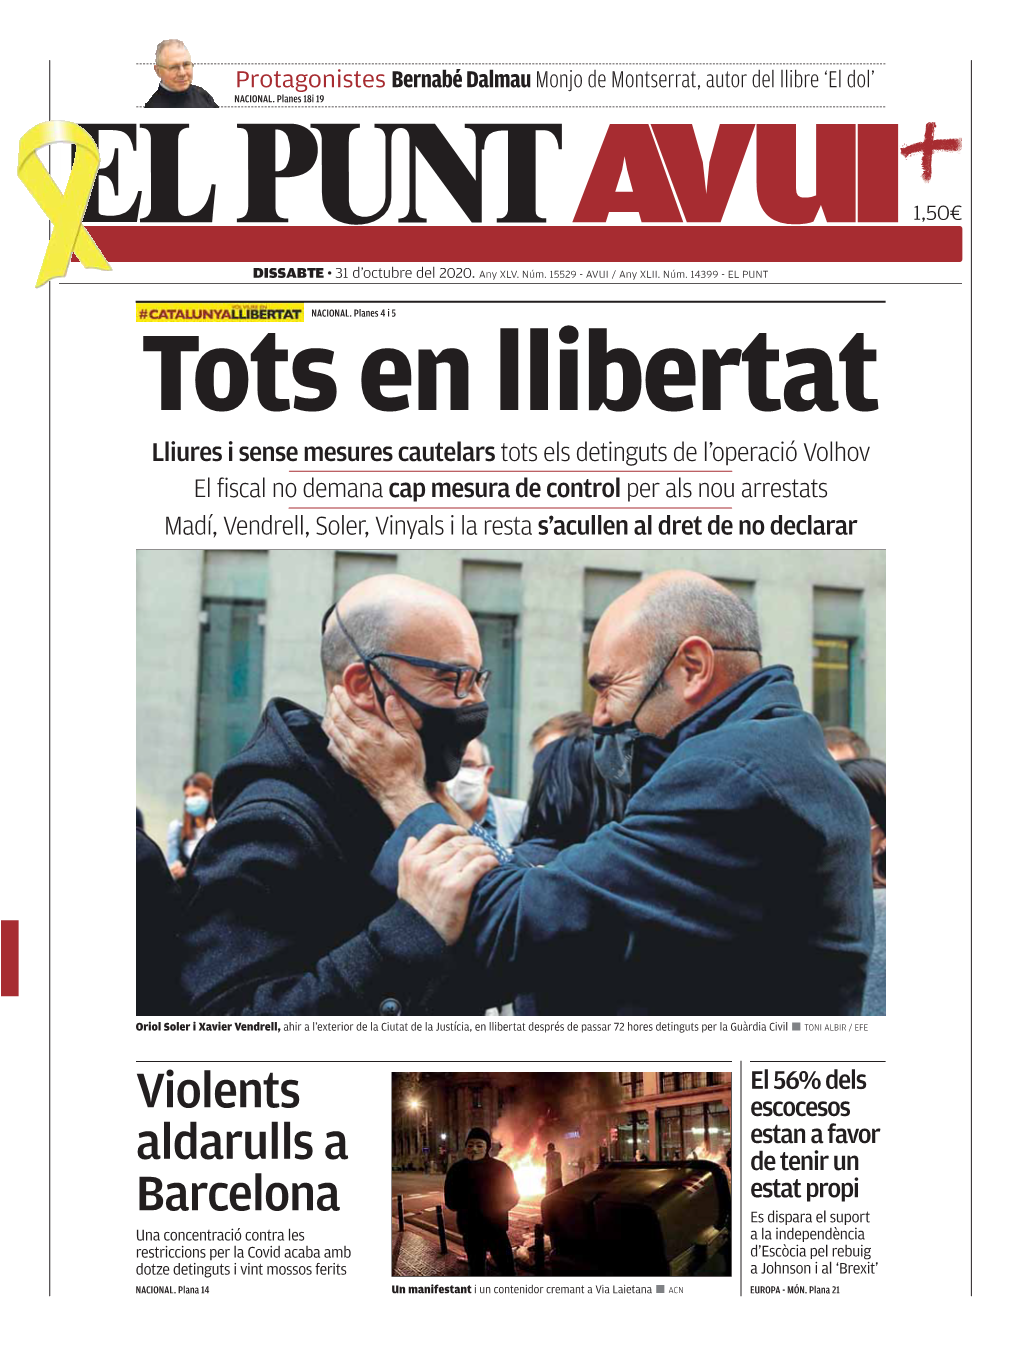 Violents Aldarulls a Barcelona